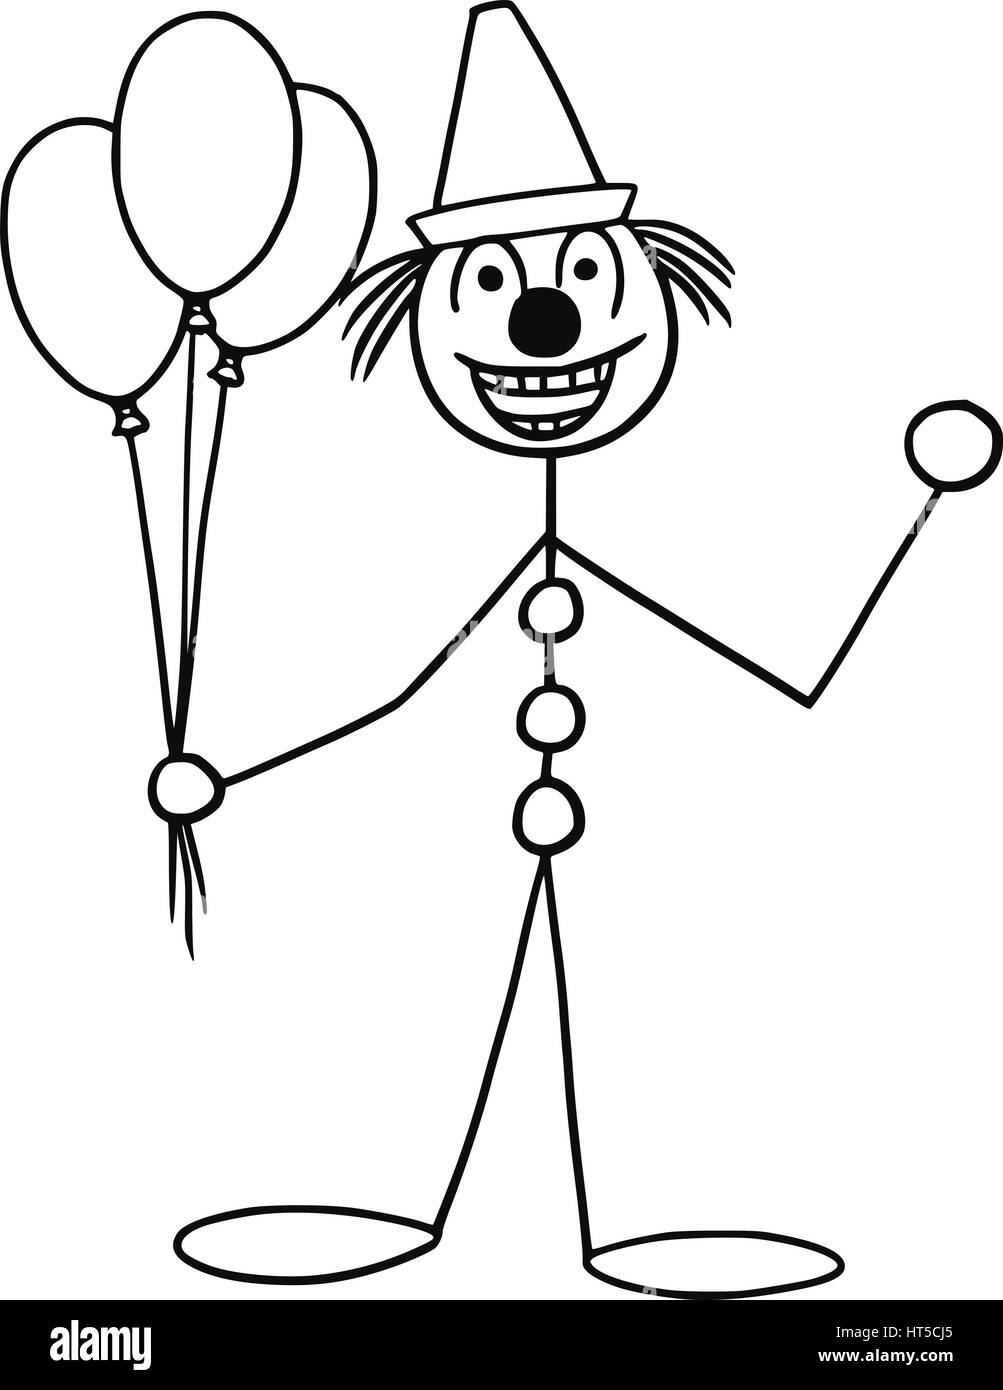 Cartoon vector stickman smiling partie ou clown de cirque bouffon avec ballons et cap Illustration de Vecteur